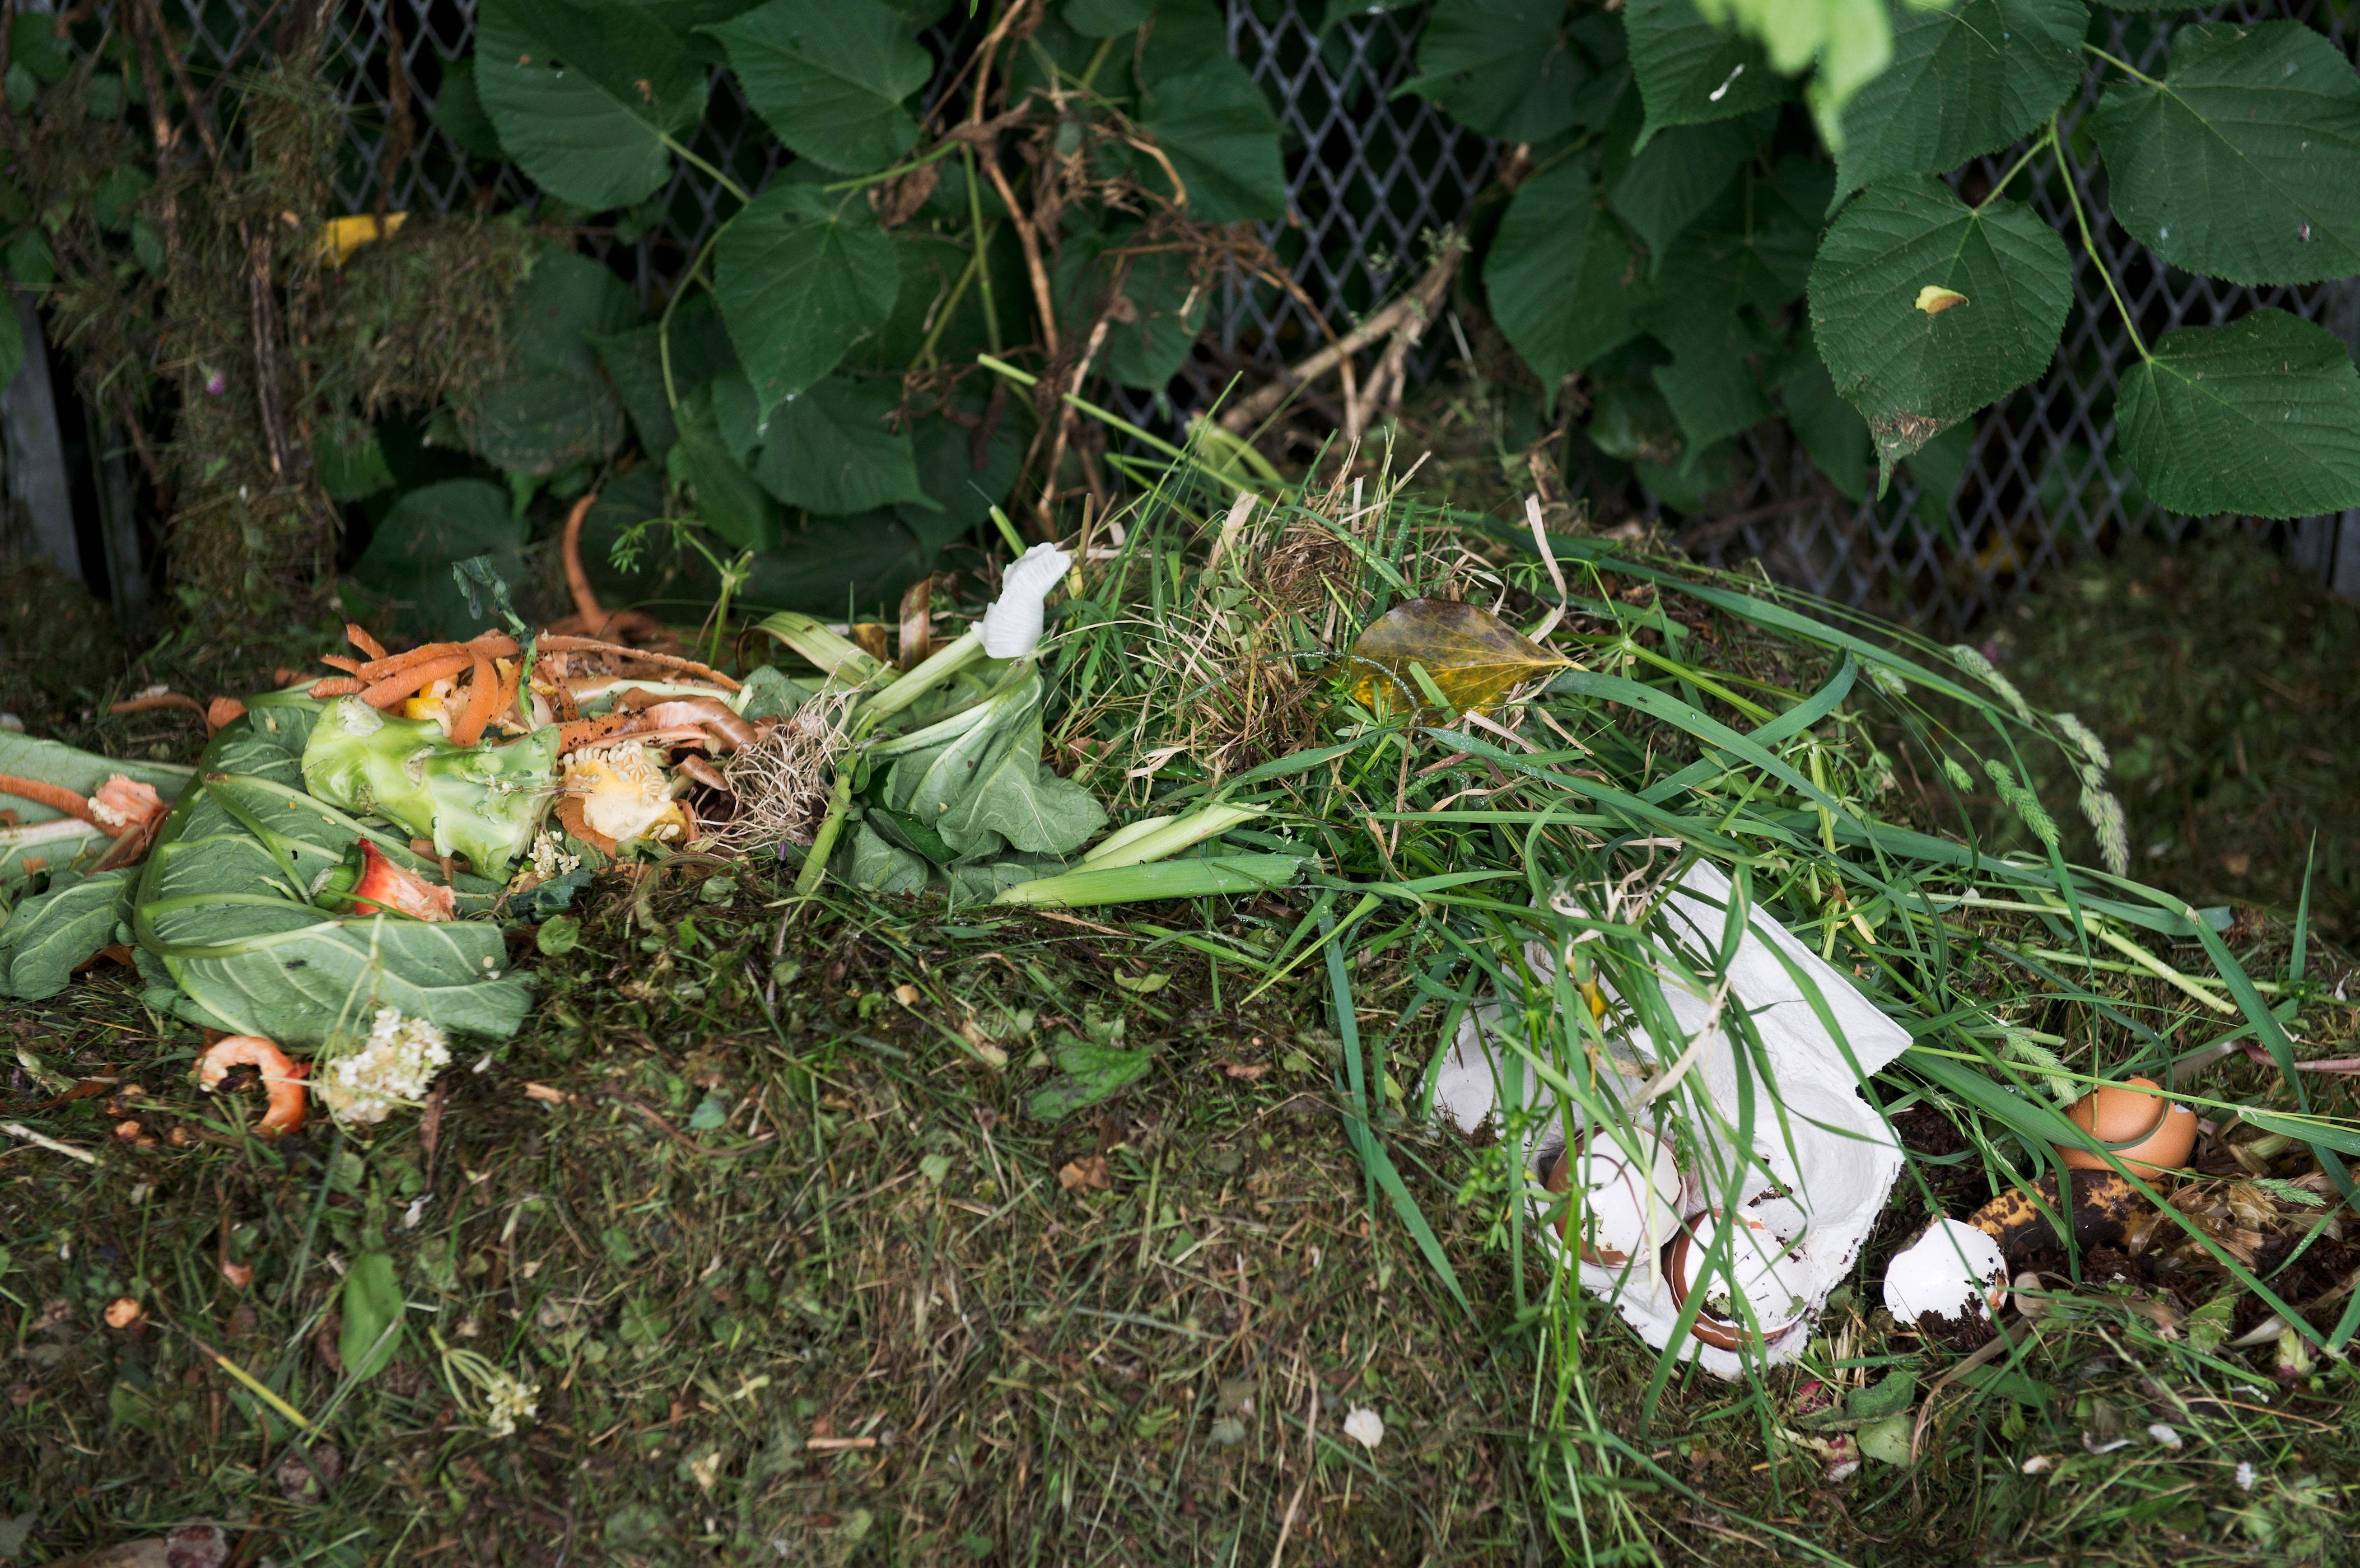 in zürich wacht die «kompostpolizei» über welkes grünzeug – dafür droht der stadt nun eine unrühmliche auszeichnung